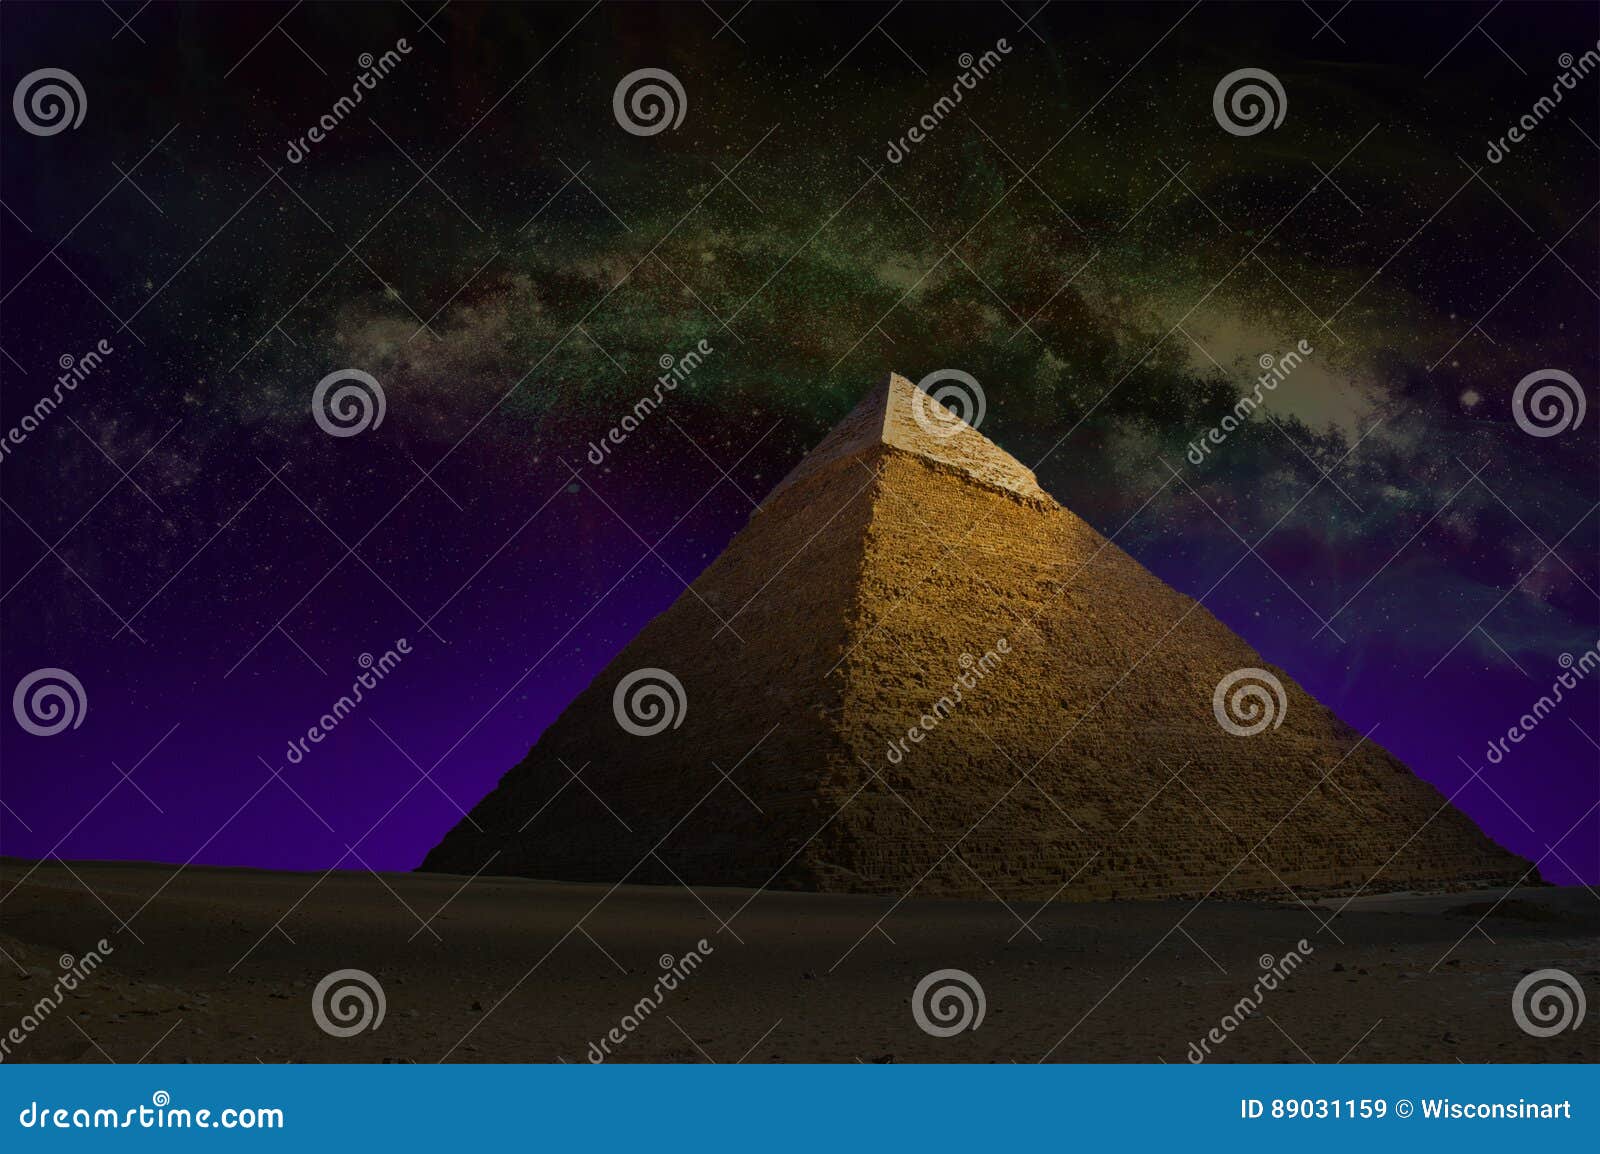 great pyramid, egypt, sky stars